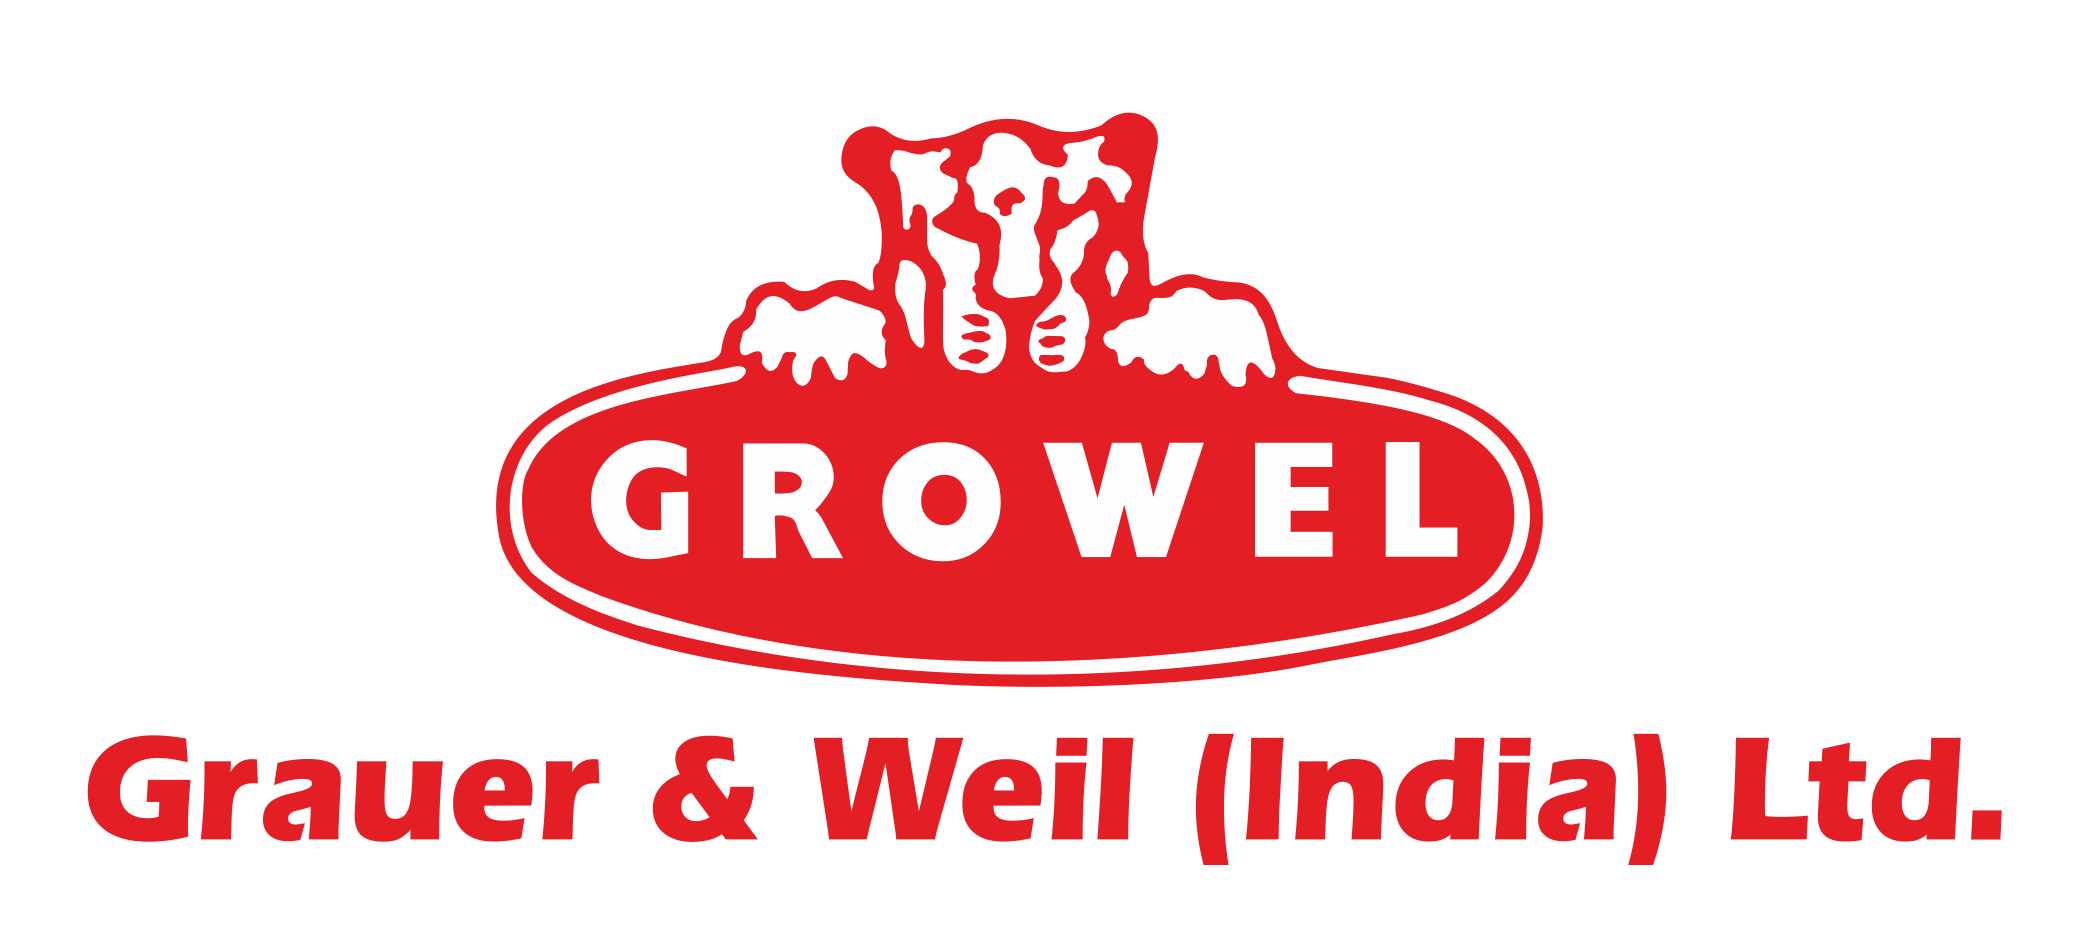 Grauer-Weil-India-Ltd_20092018_131009.jpg